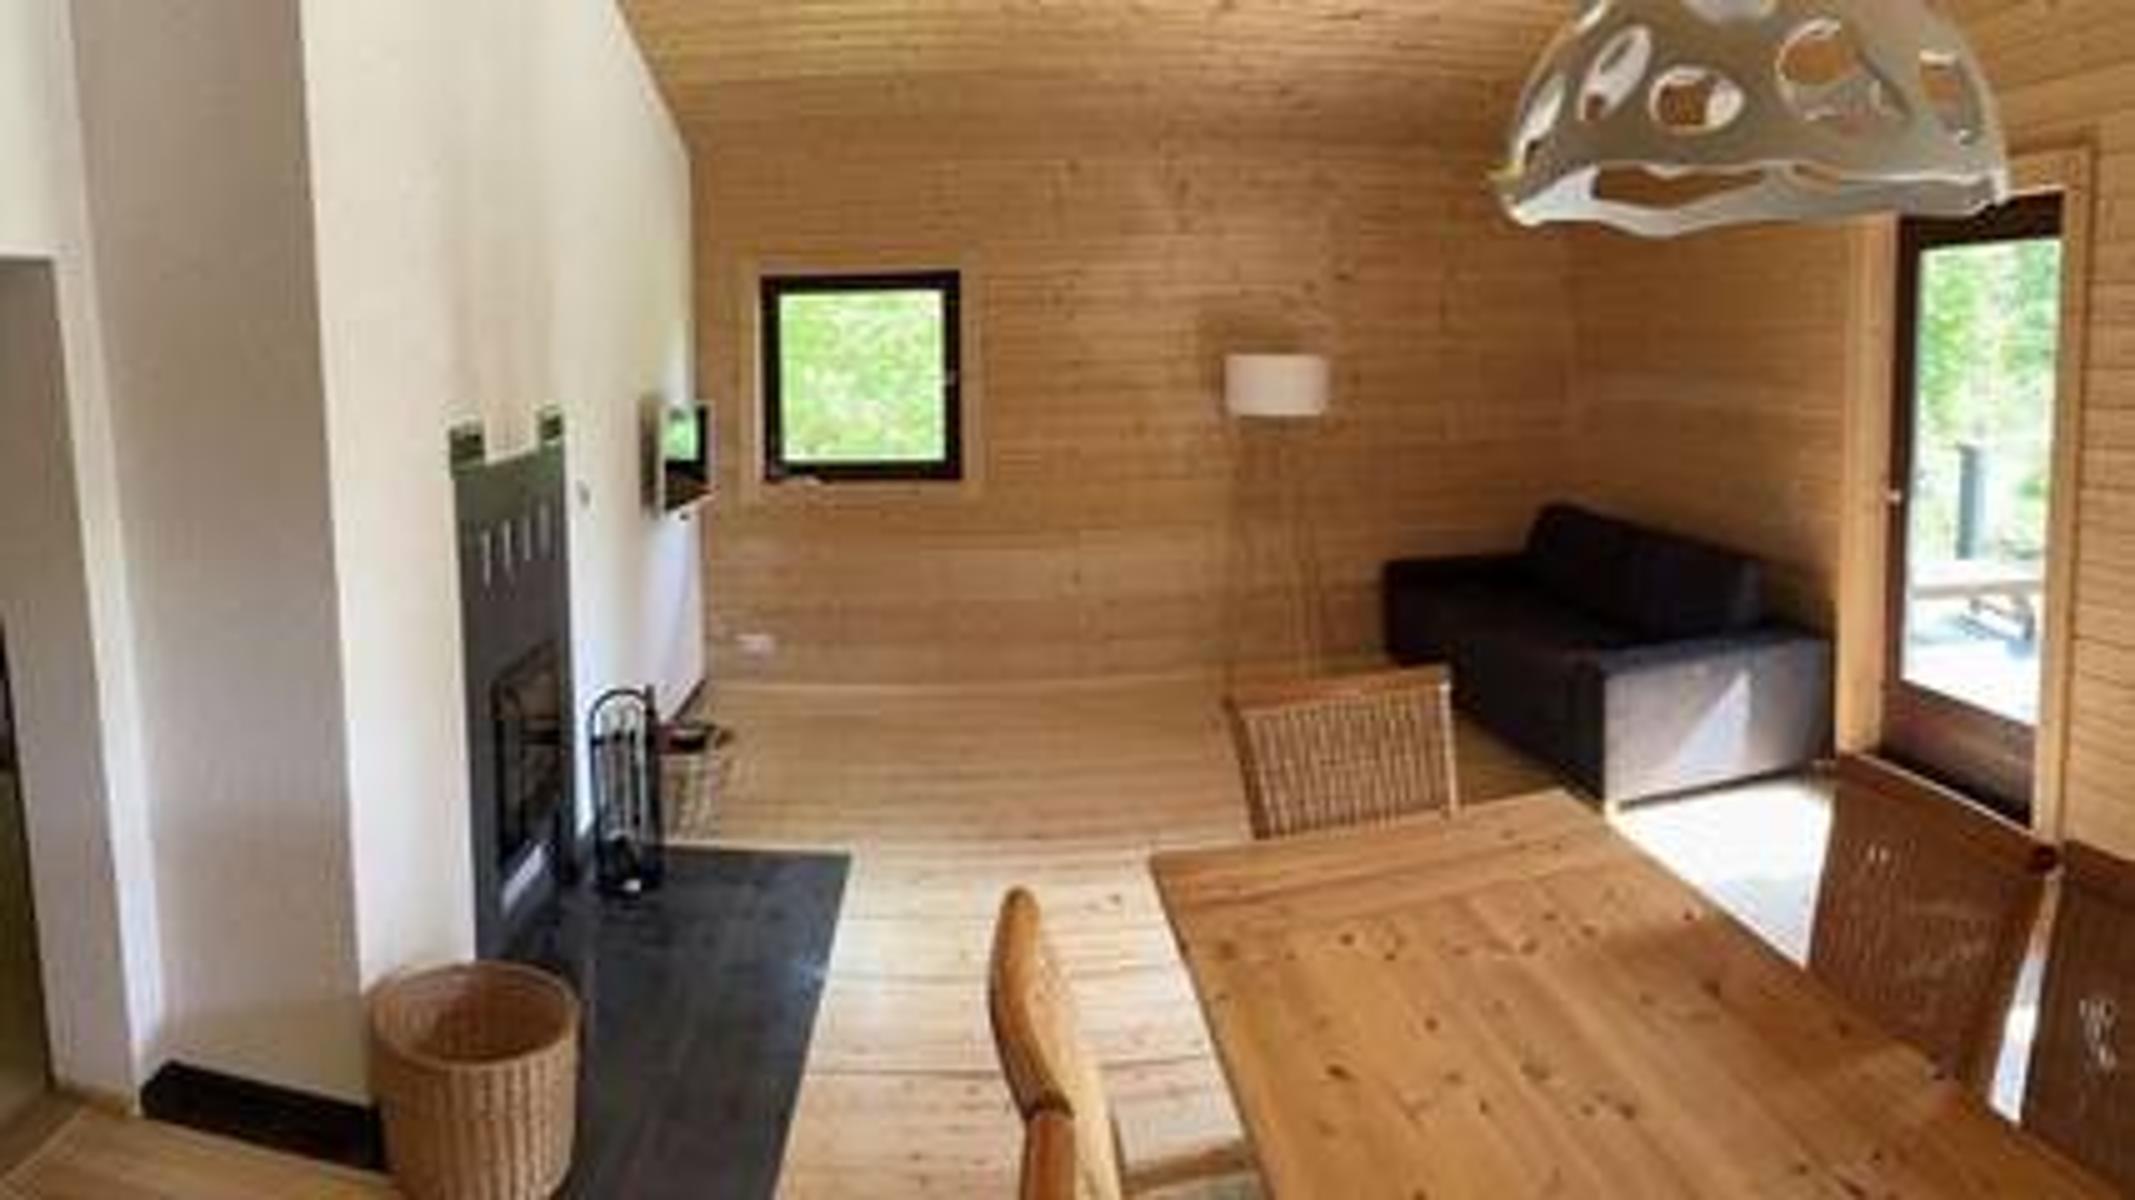 Beschreibung der Unterkunft Das Chalet Vogelsberg ist ein uriges Holzhaus inmitten eines großen eingewachsenen Grundstücks. Hier sind Sie ganz für sich und können mit Familie, Freunden, allein oder zu zweit herrlich entspannen. Eine große Terrasse...